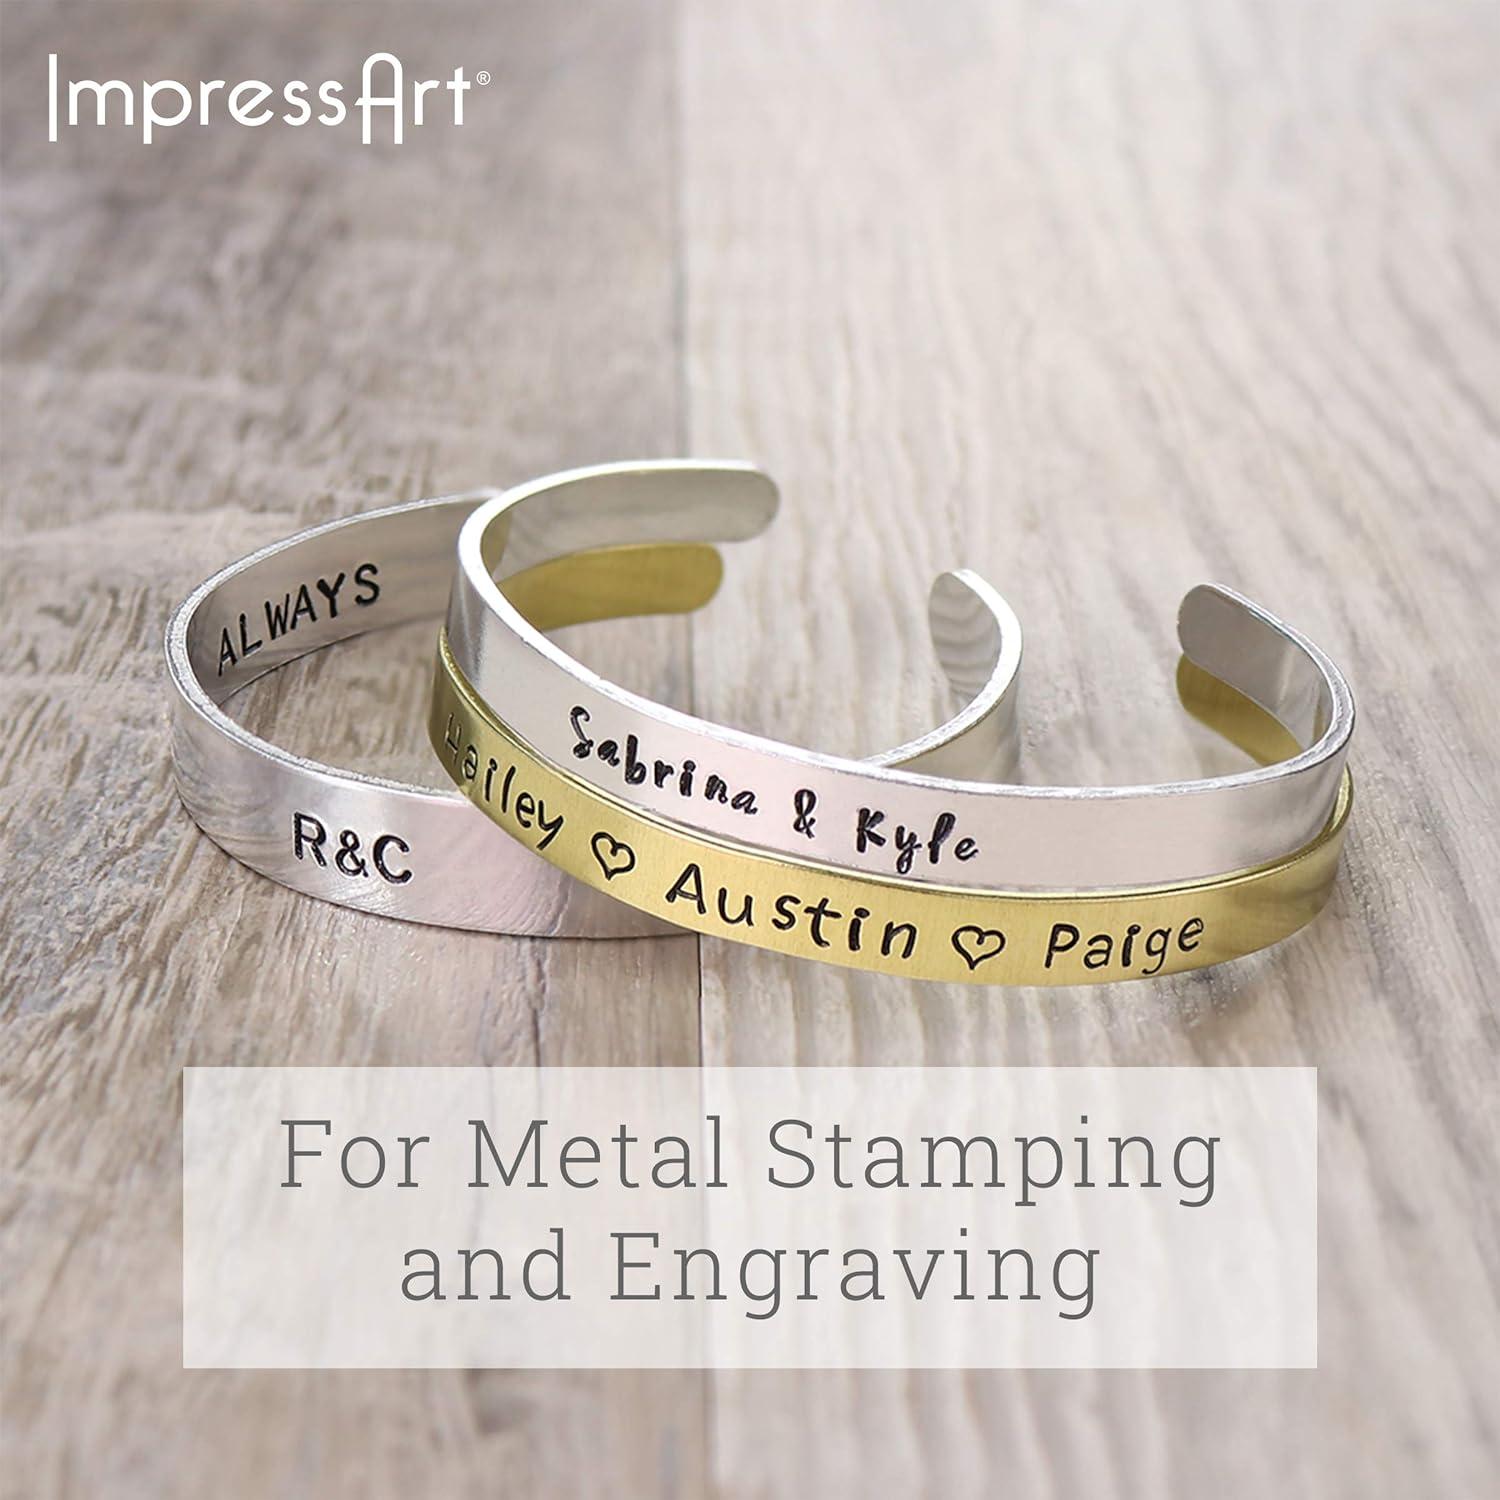 ImpressArt Aluminum Bracelet Blanks, 1/4 x 6, Pack of 24